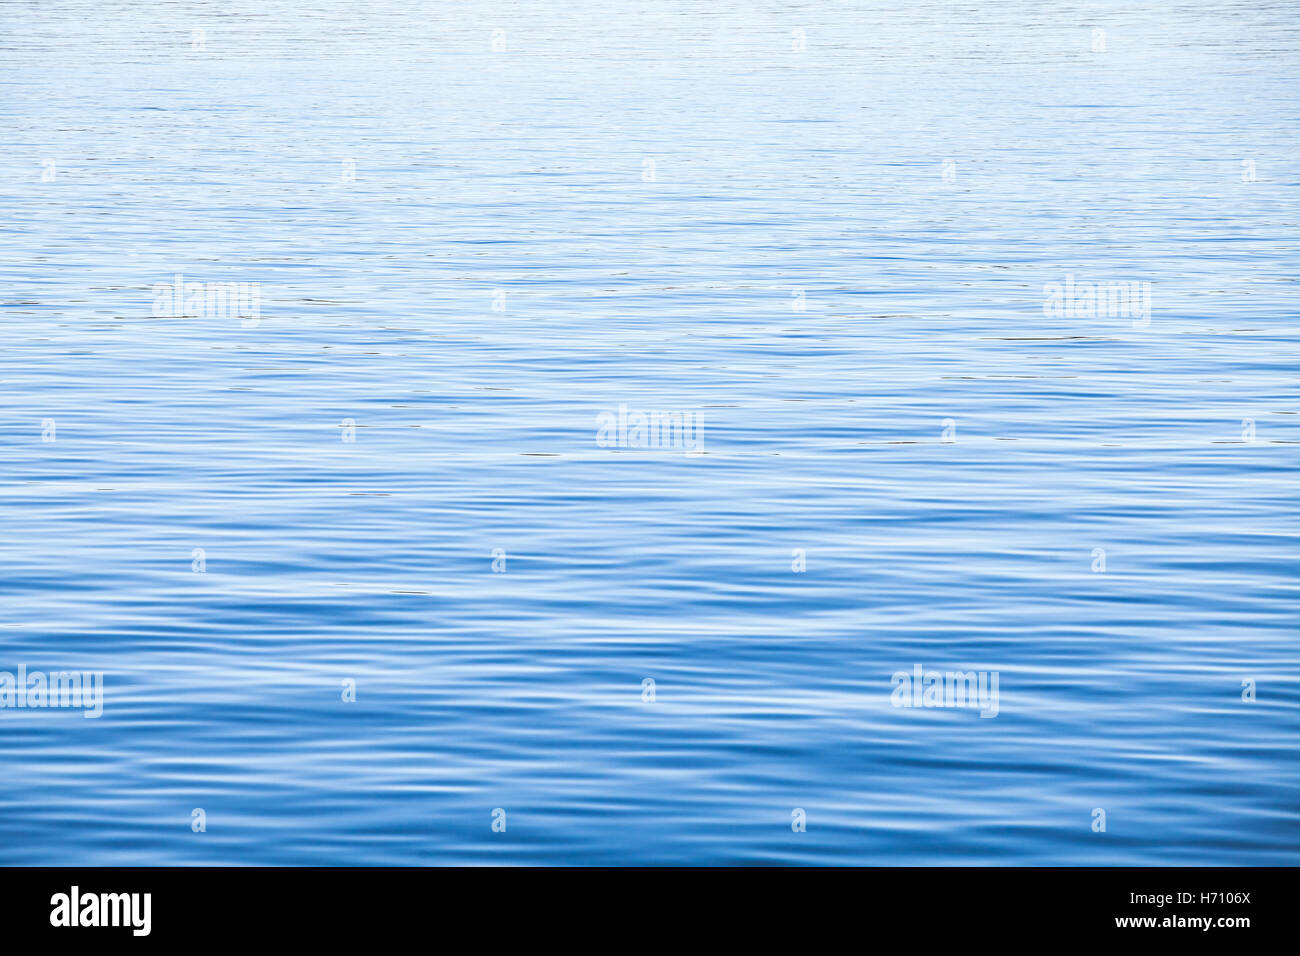 Leichten blauen Meeres Wasseroberfläche mit Kräuselung, natürliche Hintergrundtextur Foto Stockfoto